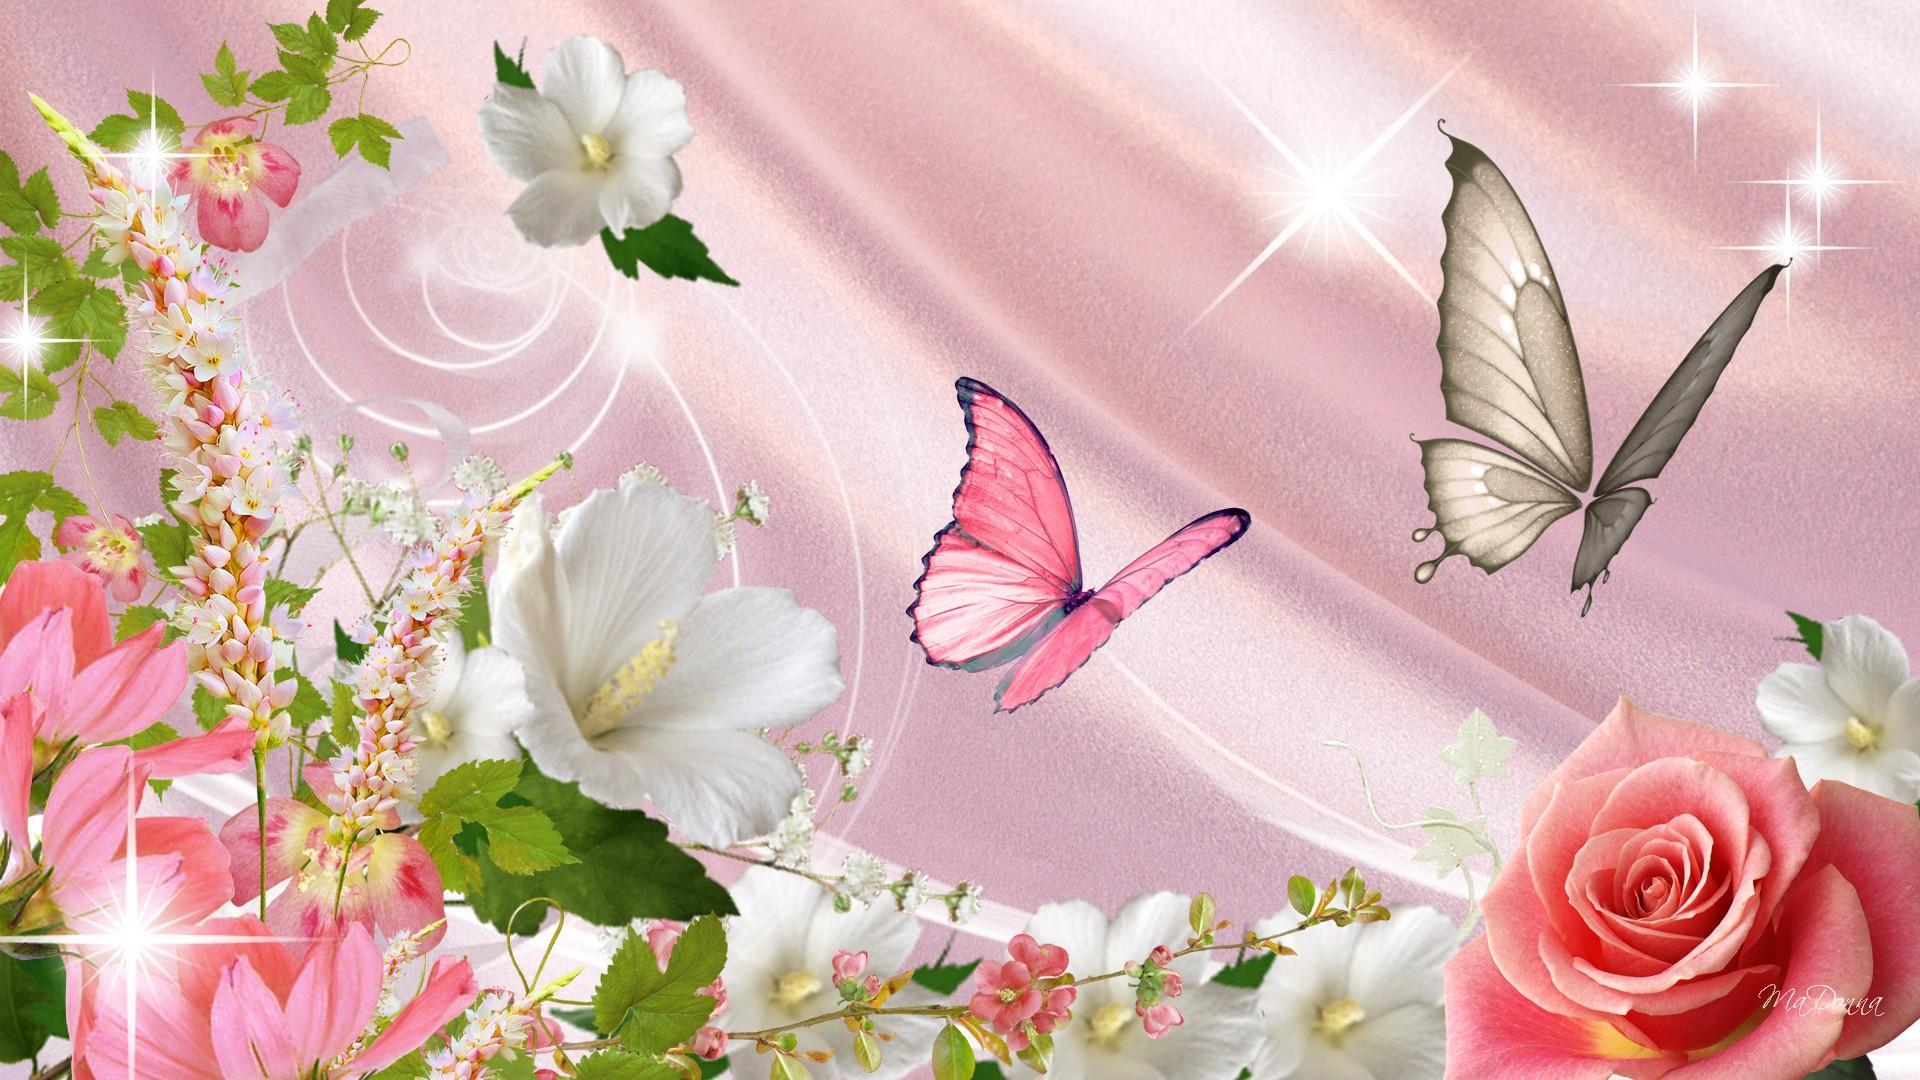 Flowers and butterflies wallpaper